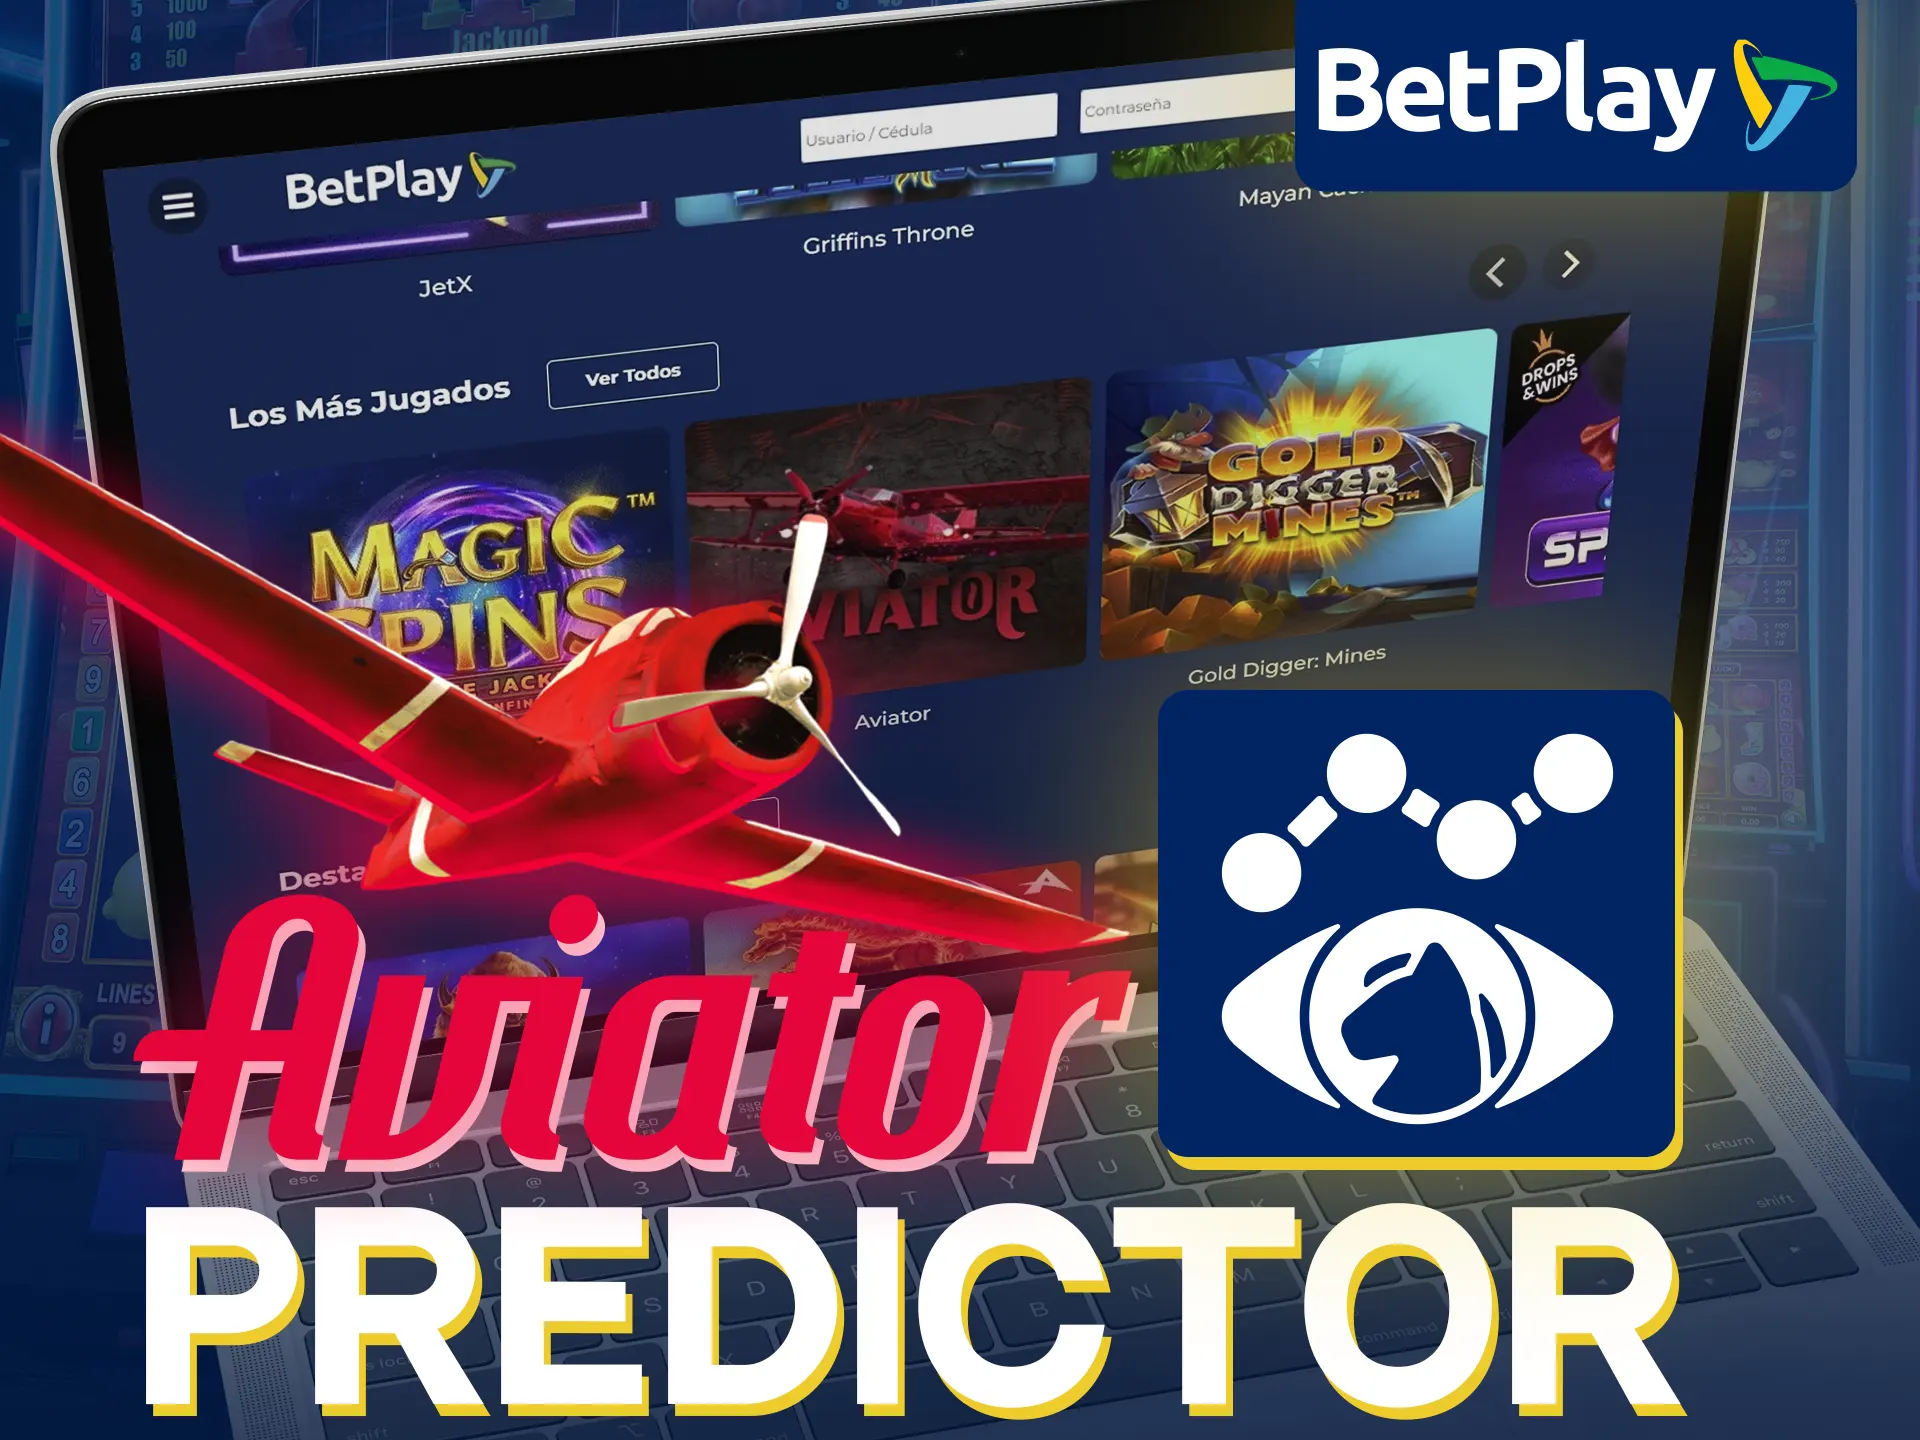 El predictor de BetPlay Aviator ayuda a predecir resultados.